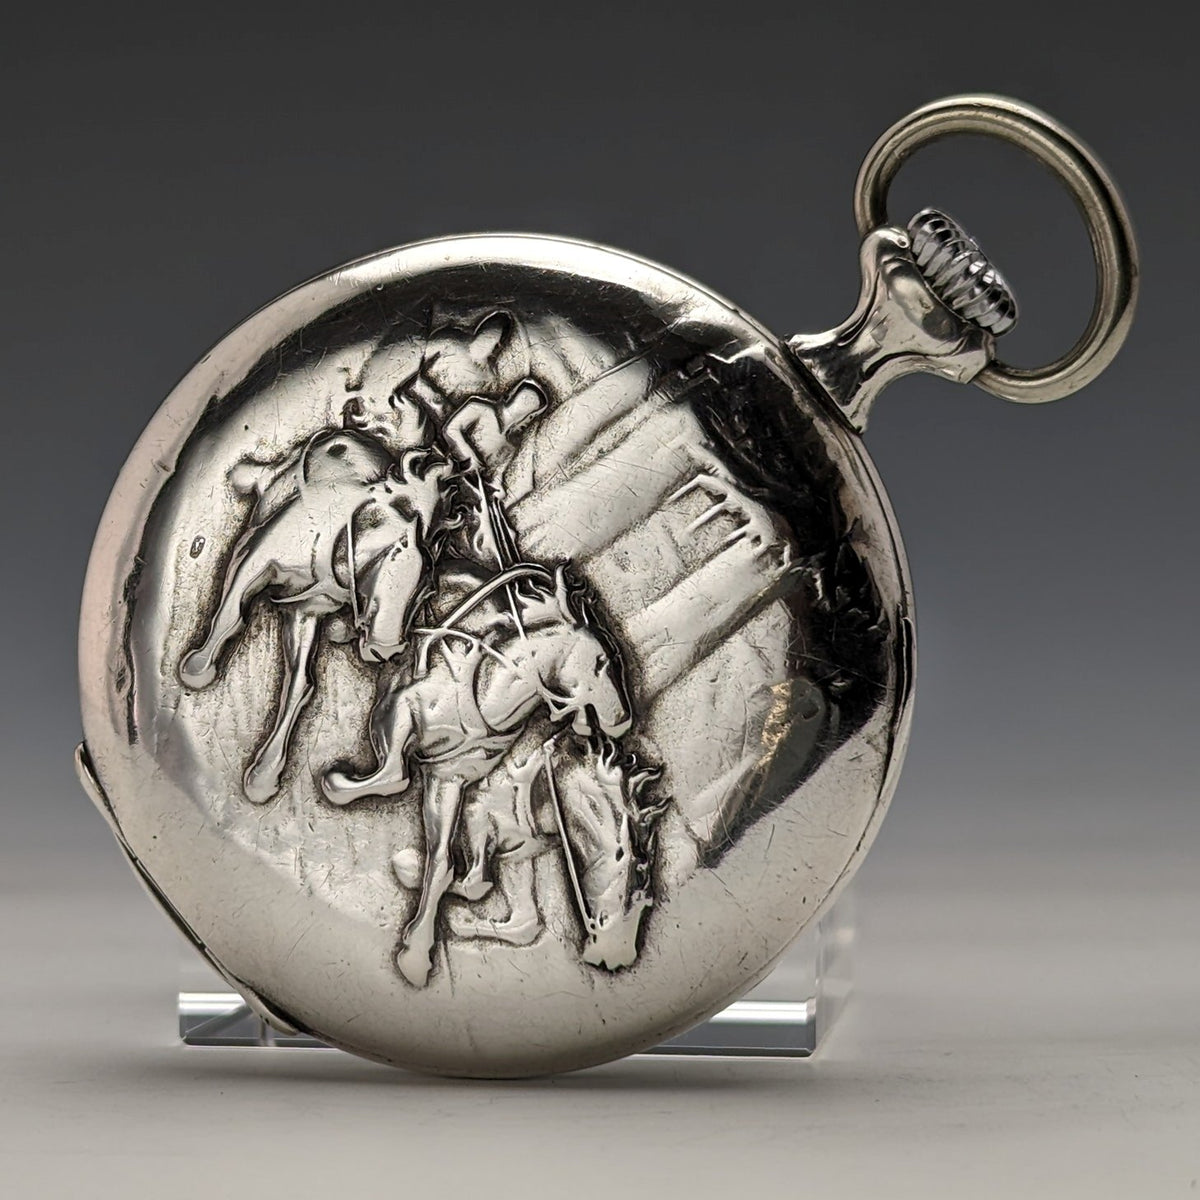 20世紀初頭 アンティーク MOVADO 懐中時計 馬車彫刻銀側ケース 動作良好